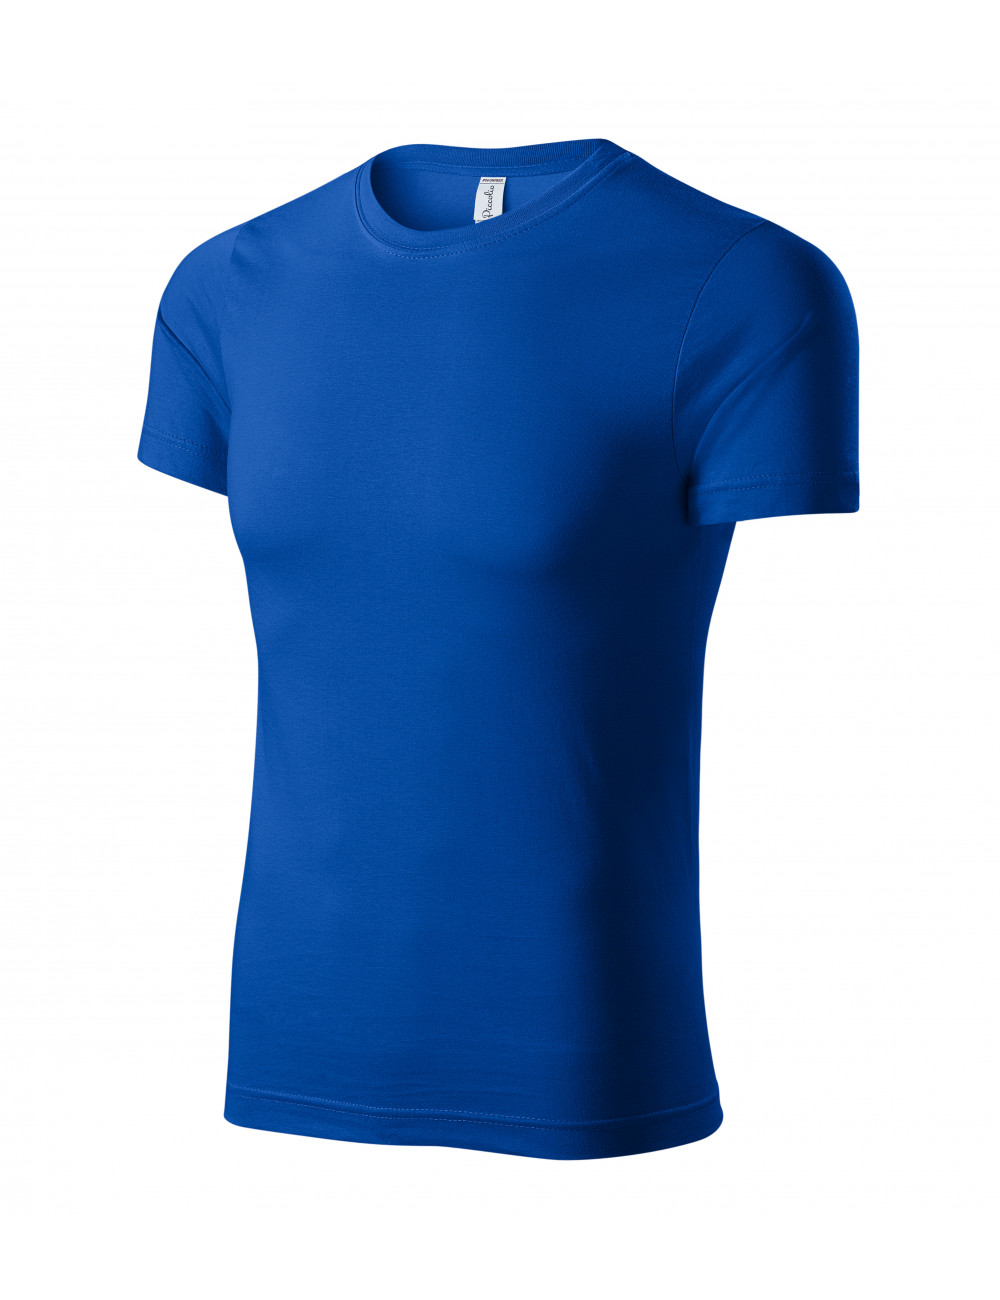 Unisex T-Shirt Peak P74 Kornblumenblau Adler Piccolio